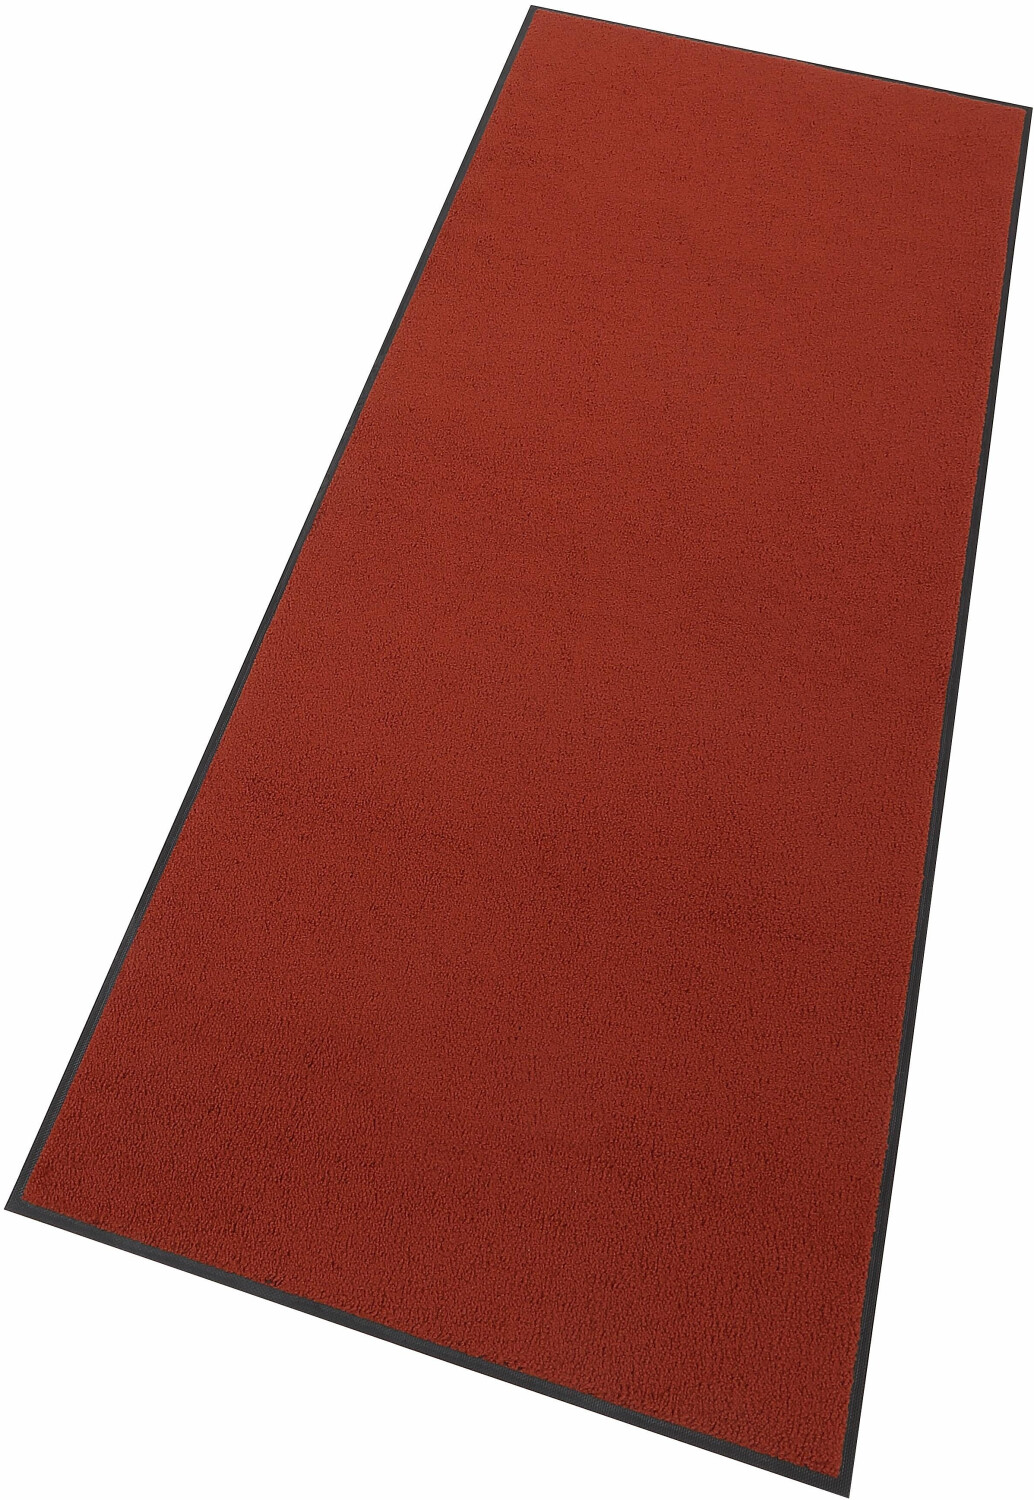 Wash+Dry Schmutzfangmatte Original 60x180cm 72,05 | € rot/orange bei Preisvergleich ab